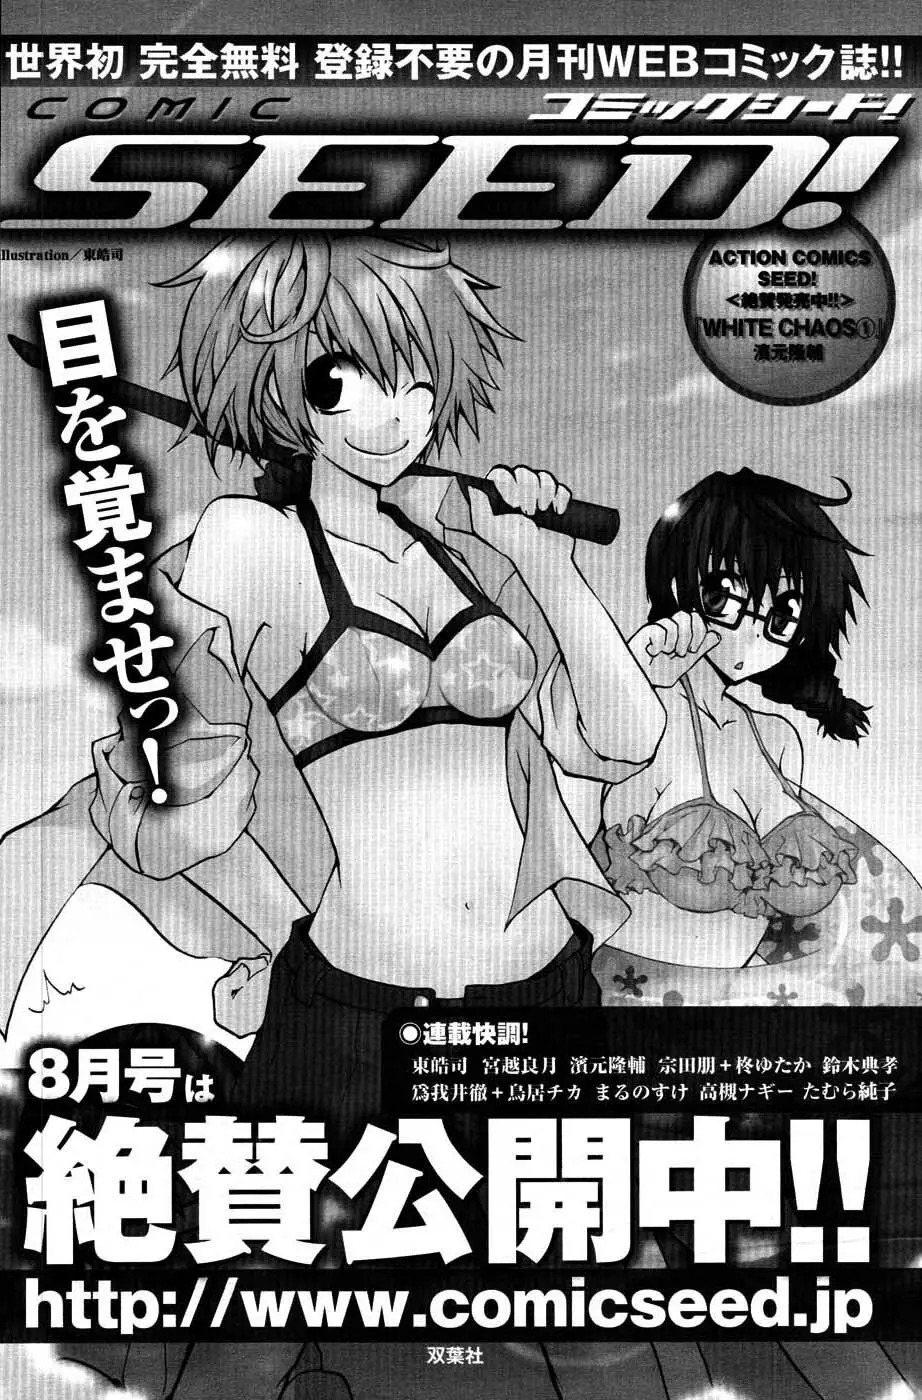 メンズヤングスペシャルIKAZUCHI雷 Vol.3 2007年9月号増刊 121ページ